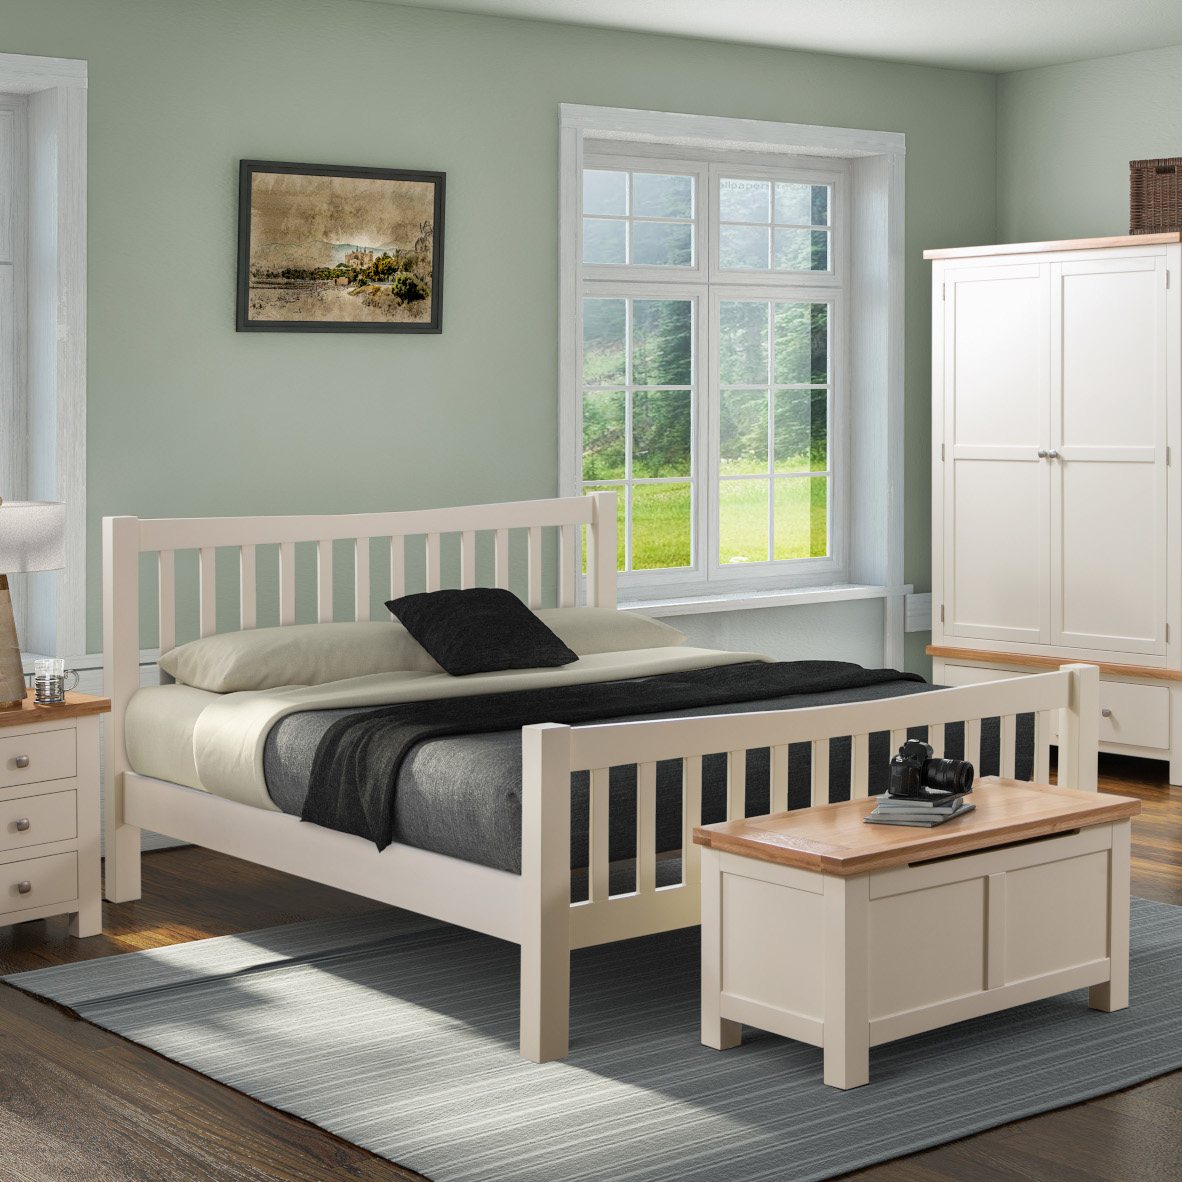 Bristol ivory bedroom furniture